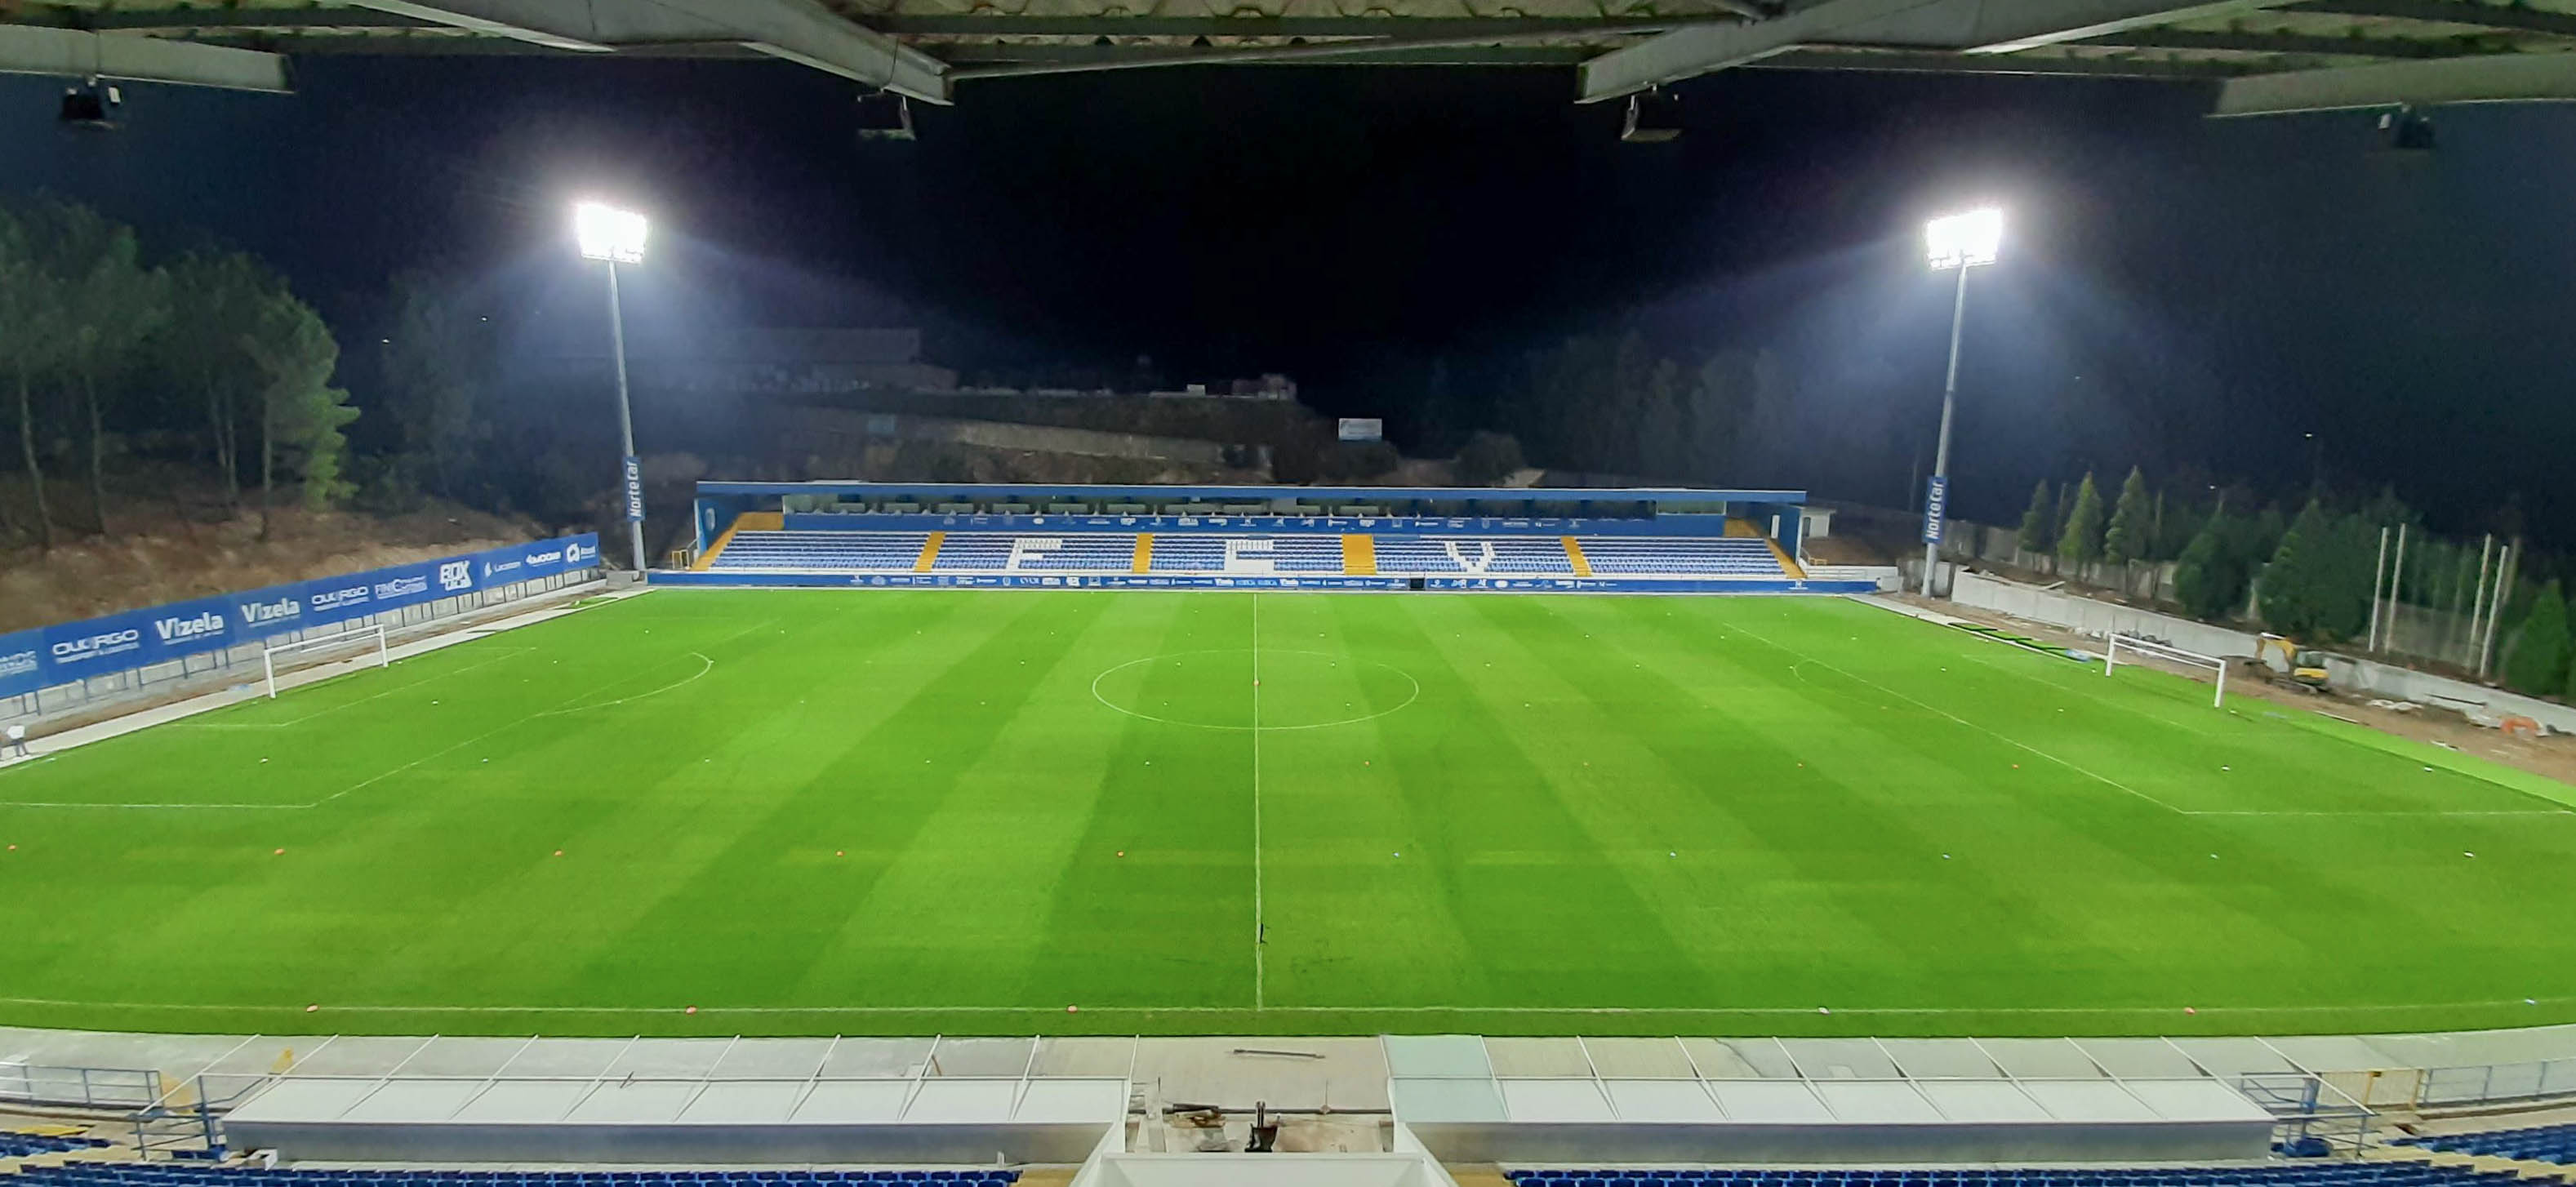 dael_industria_metalurgica_lda-Iluminação desportiva no estádio do FC Vizela